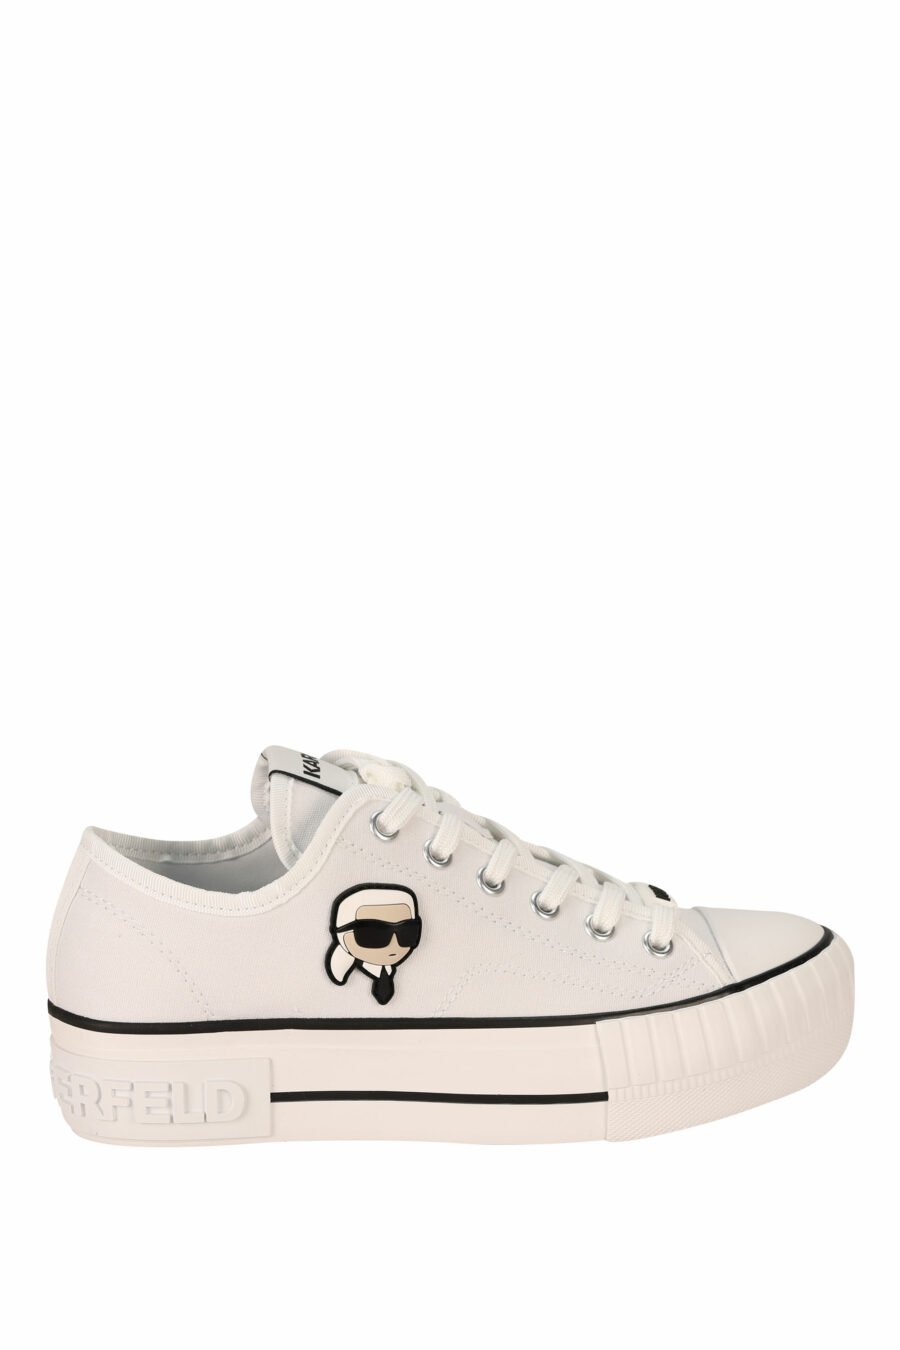 Zapatillas blancas estilo "converse" con minilogo de goma "karl" - 5059529384639